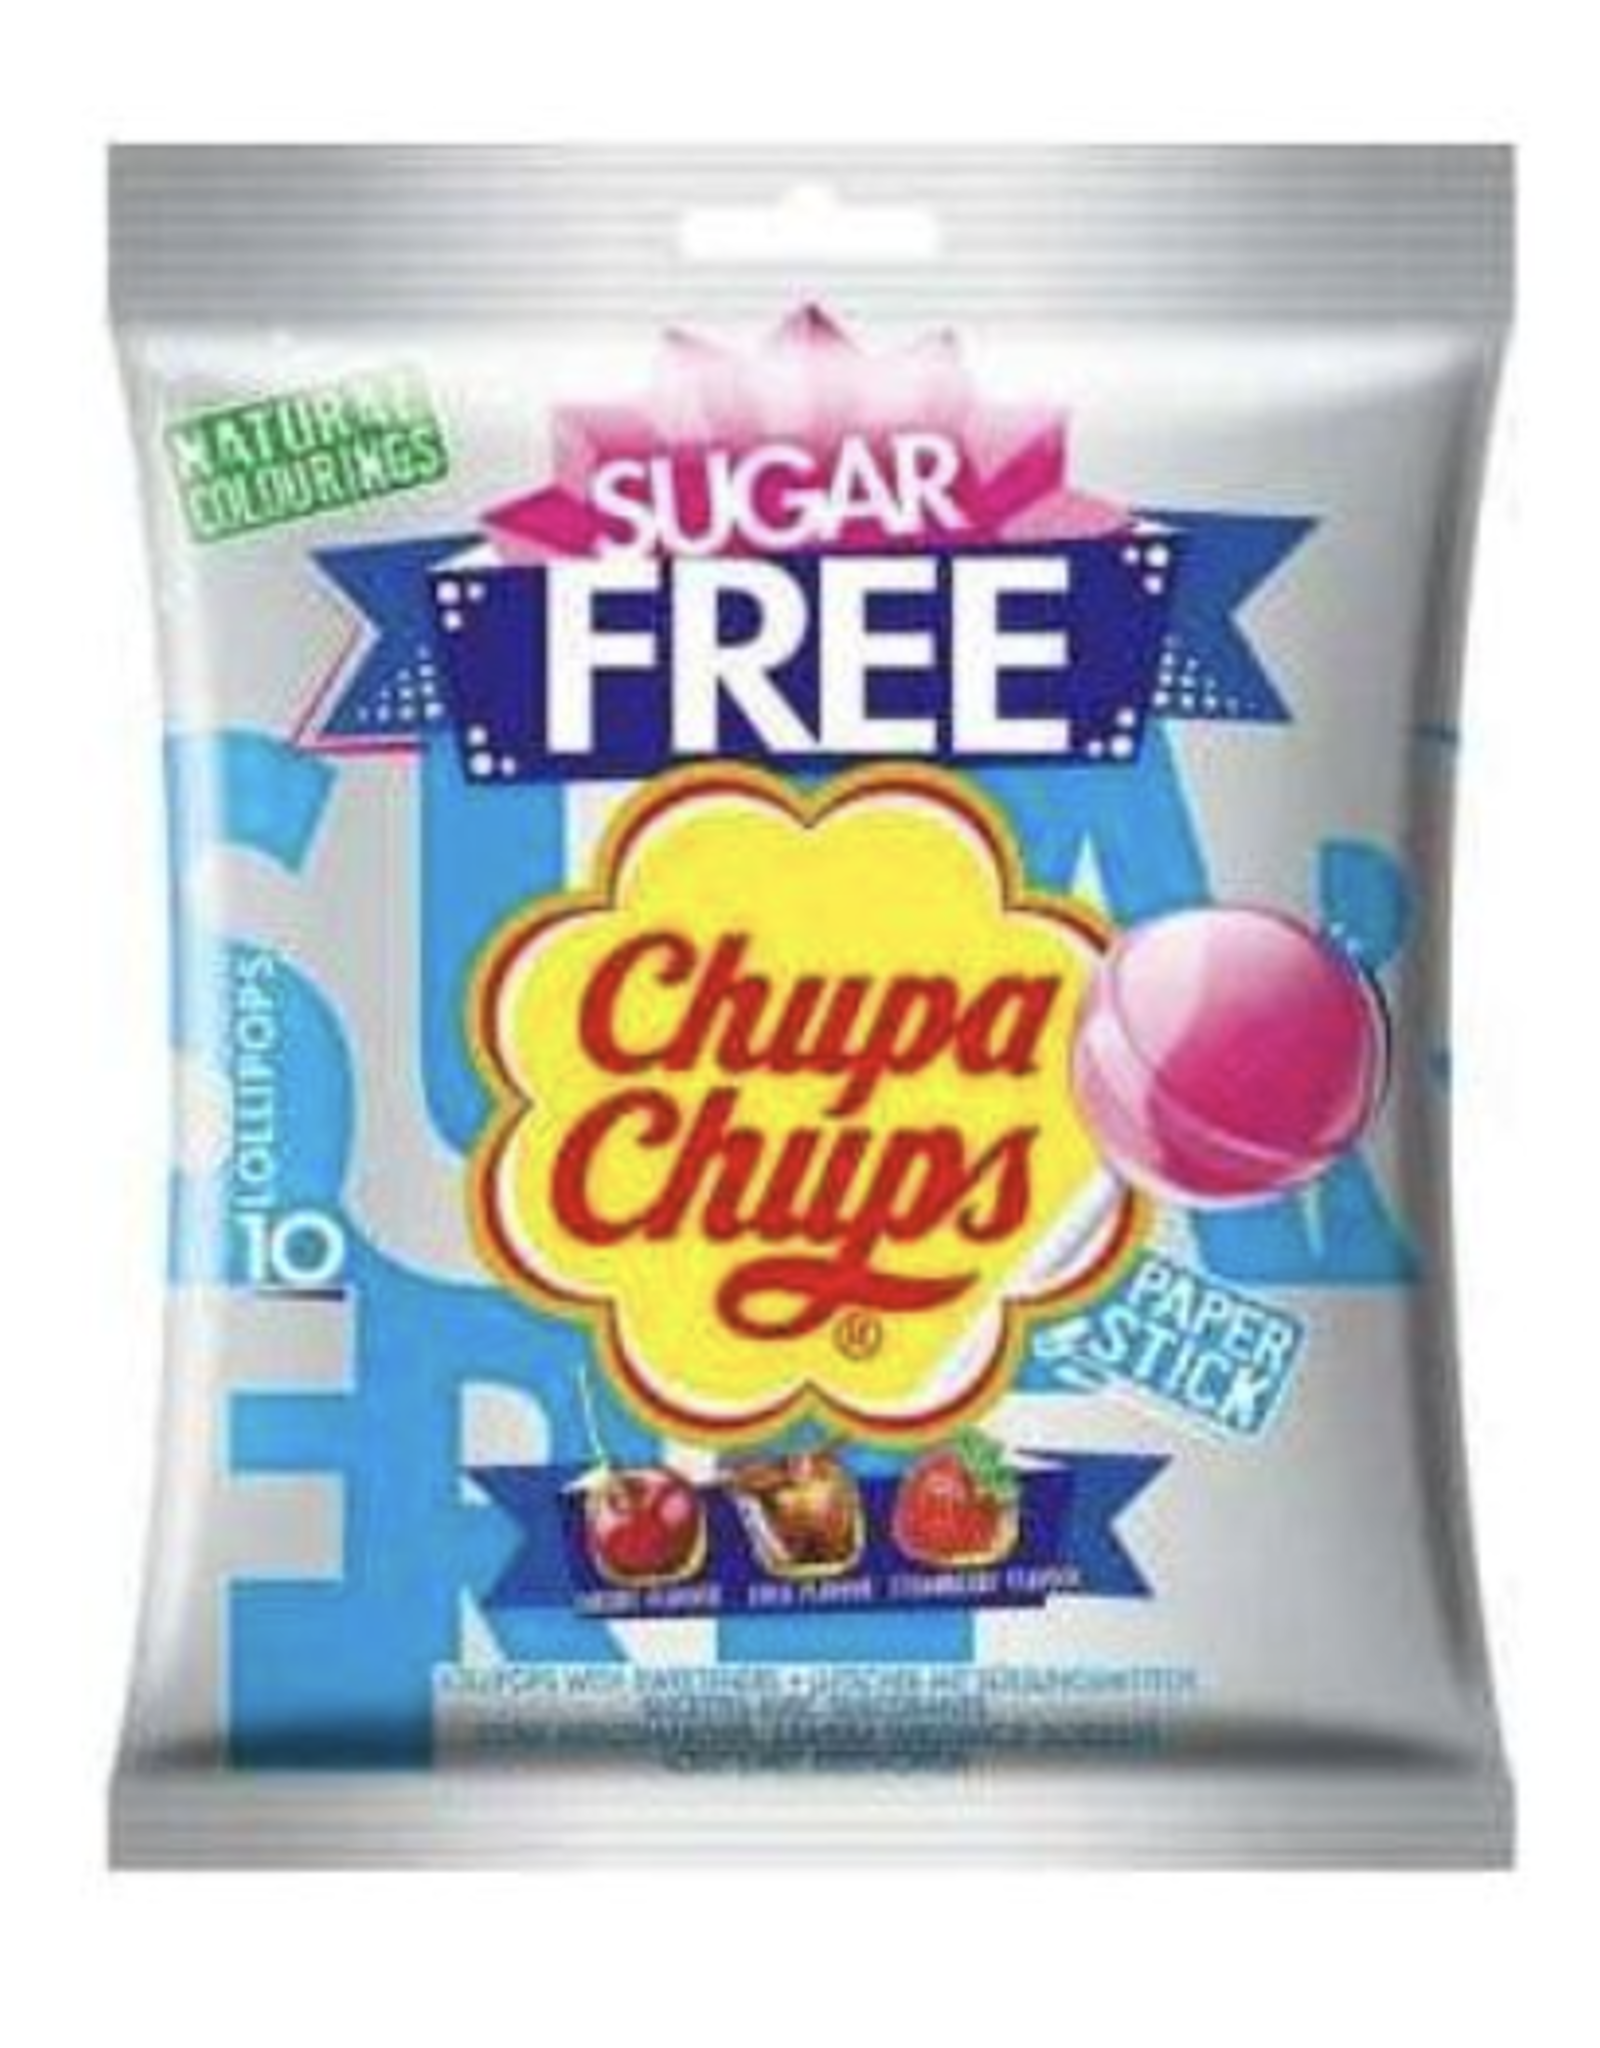 Russell Stover Chupa Chups Sugar Free 10pc